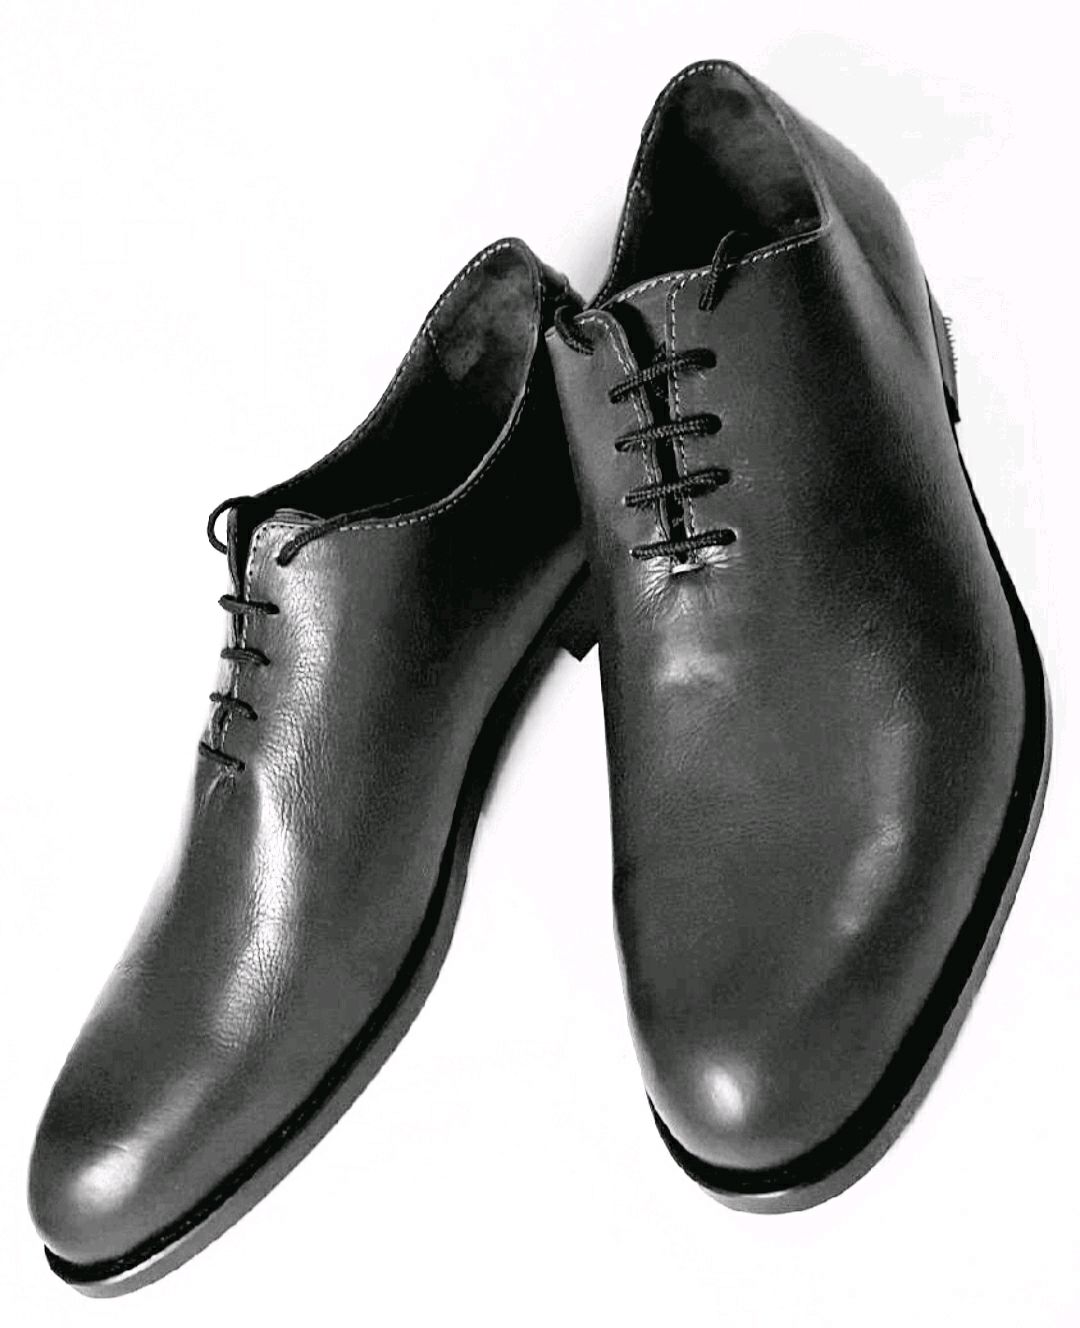 Натуральные кожаные туфли. Vladis Elegant 1138 туфли мужские. Мужские кожаные Tufli 2020. Mainichi Leather туфли мужские. Туфли мужские кожаные классические.